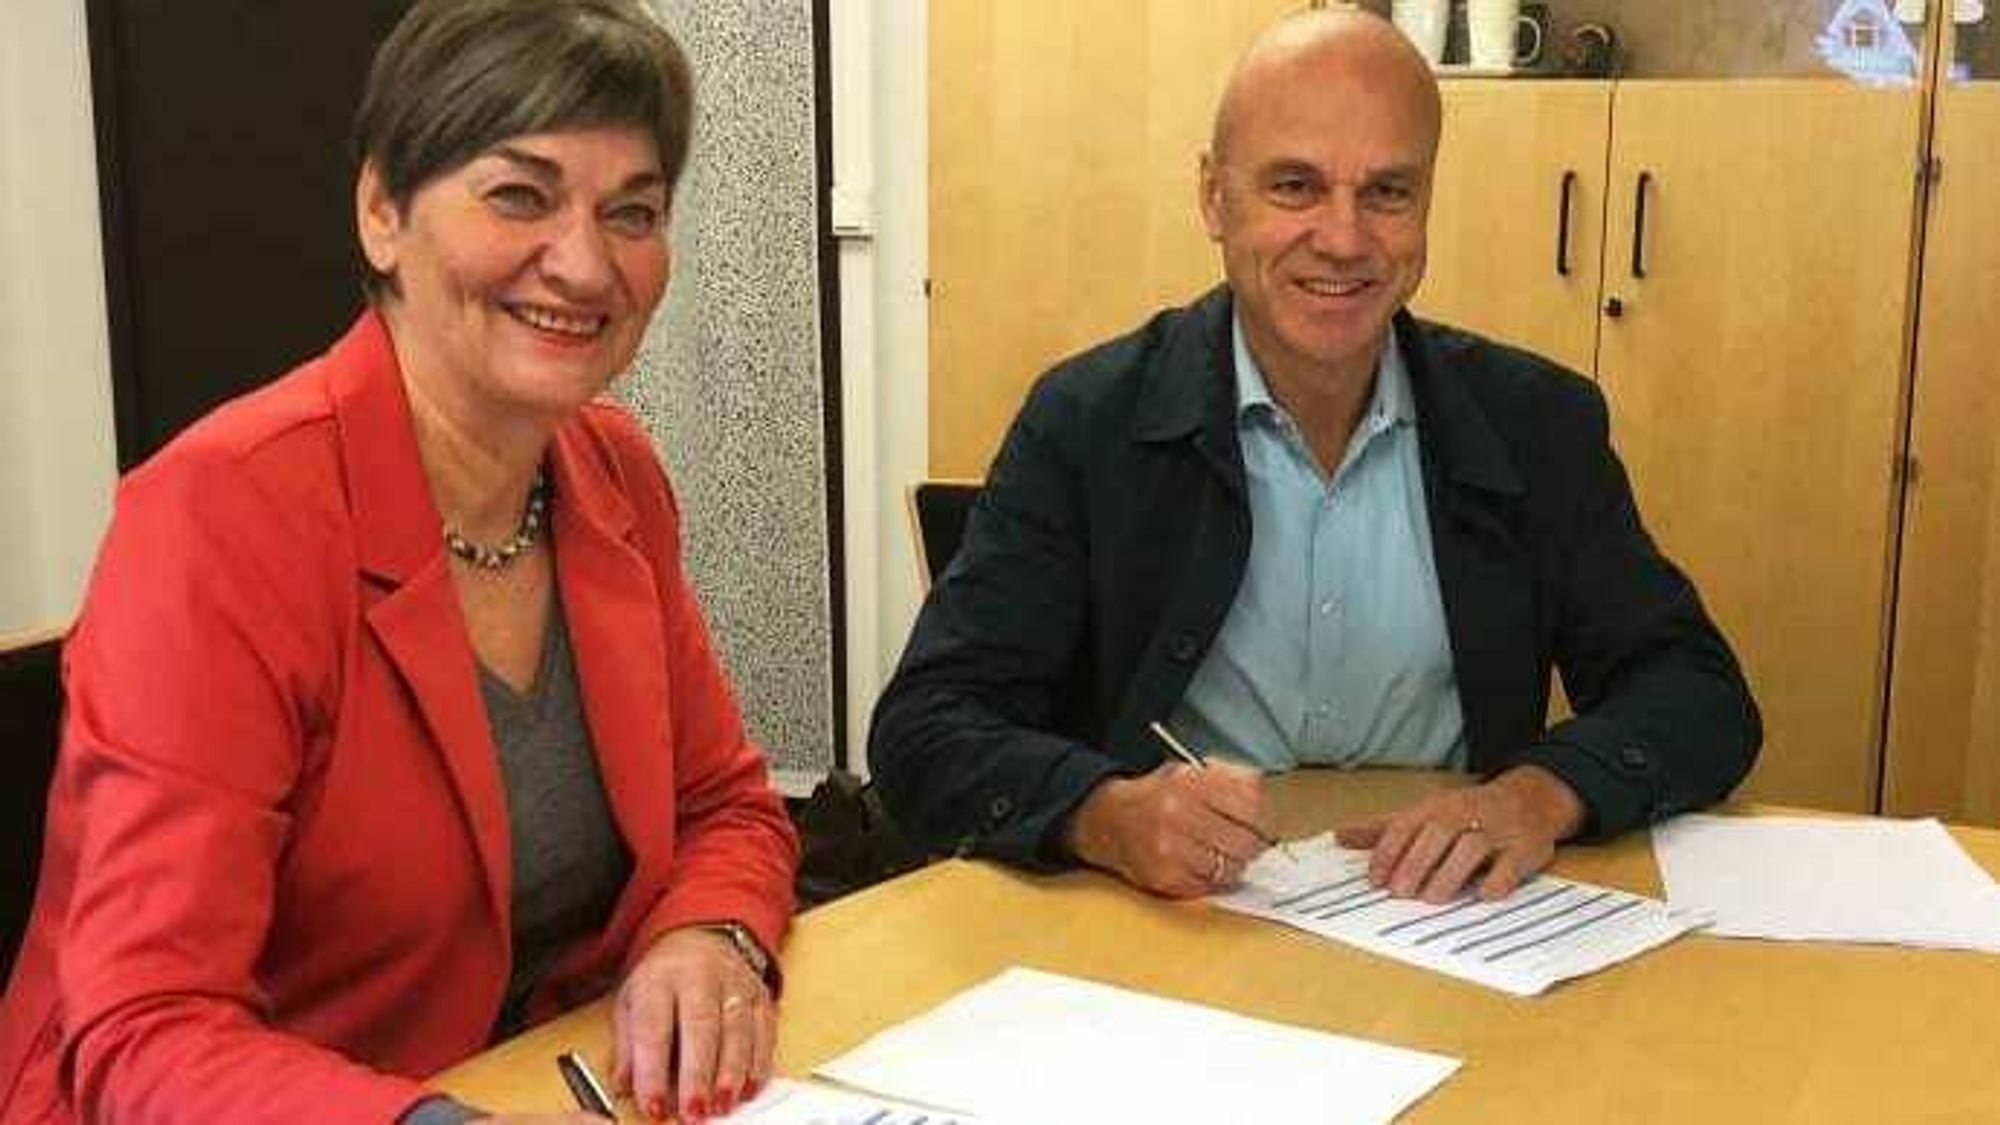 Ordfører Eva Hove i Fjord kommune og konsernsjef Erik Espeset i Tafjord signerer en avtale som gir alle i kommunen tilgang til fiber.